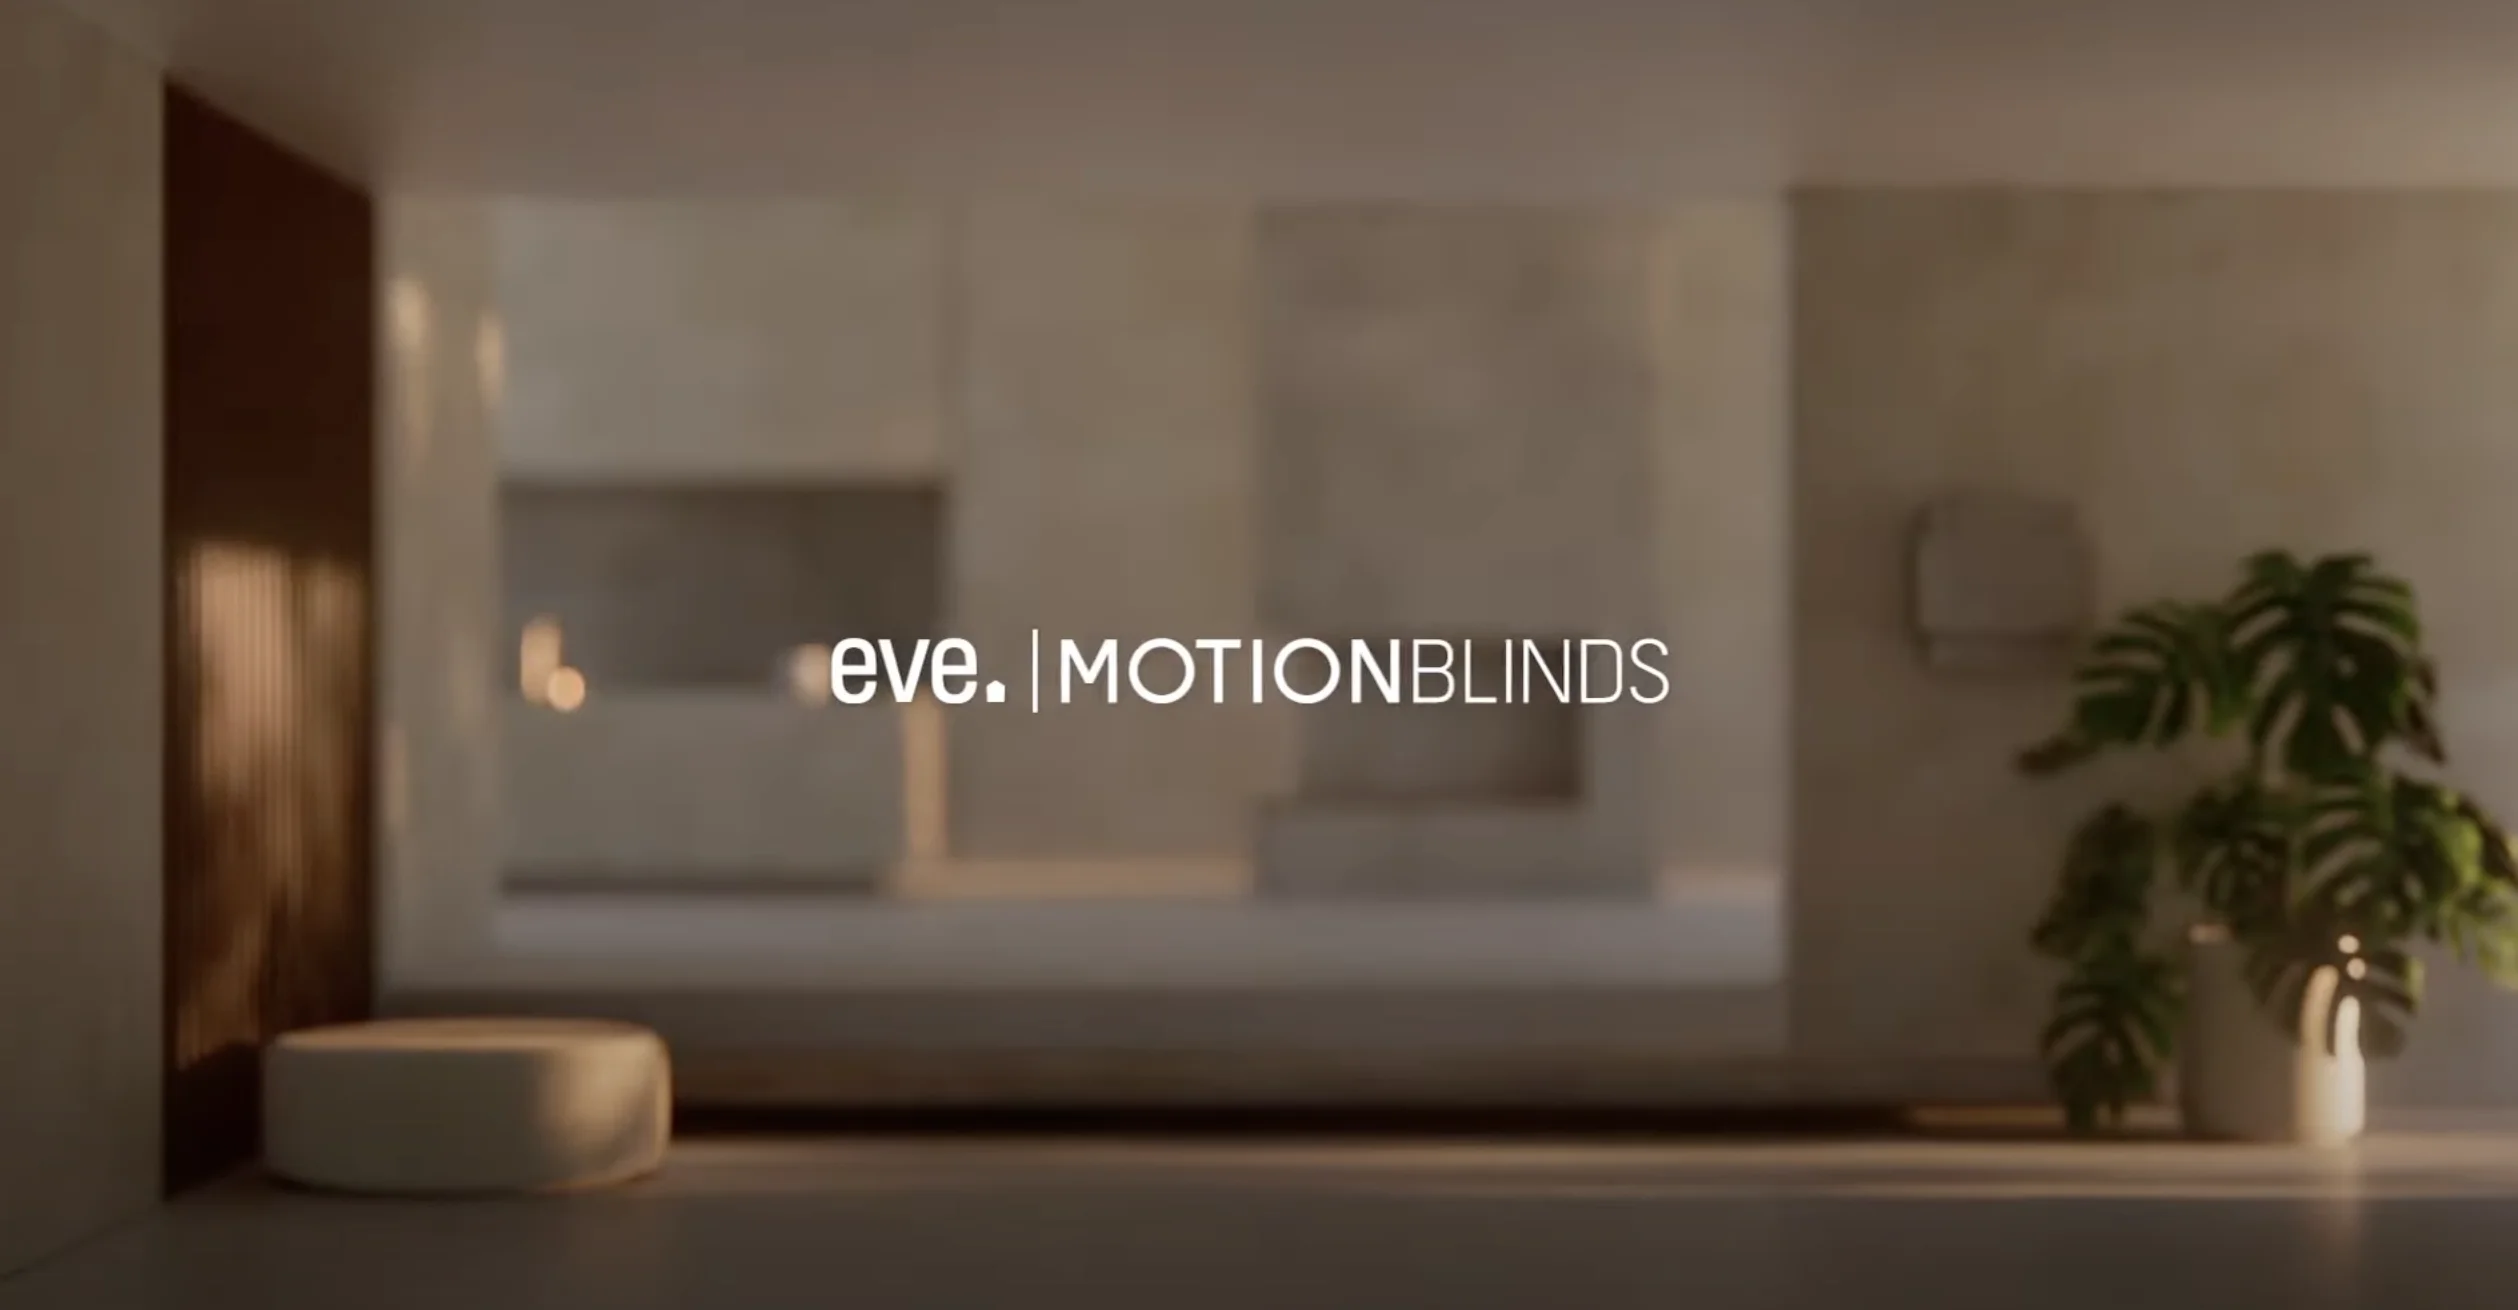 Eve Motion Blinds